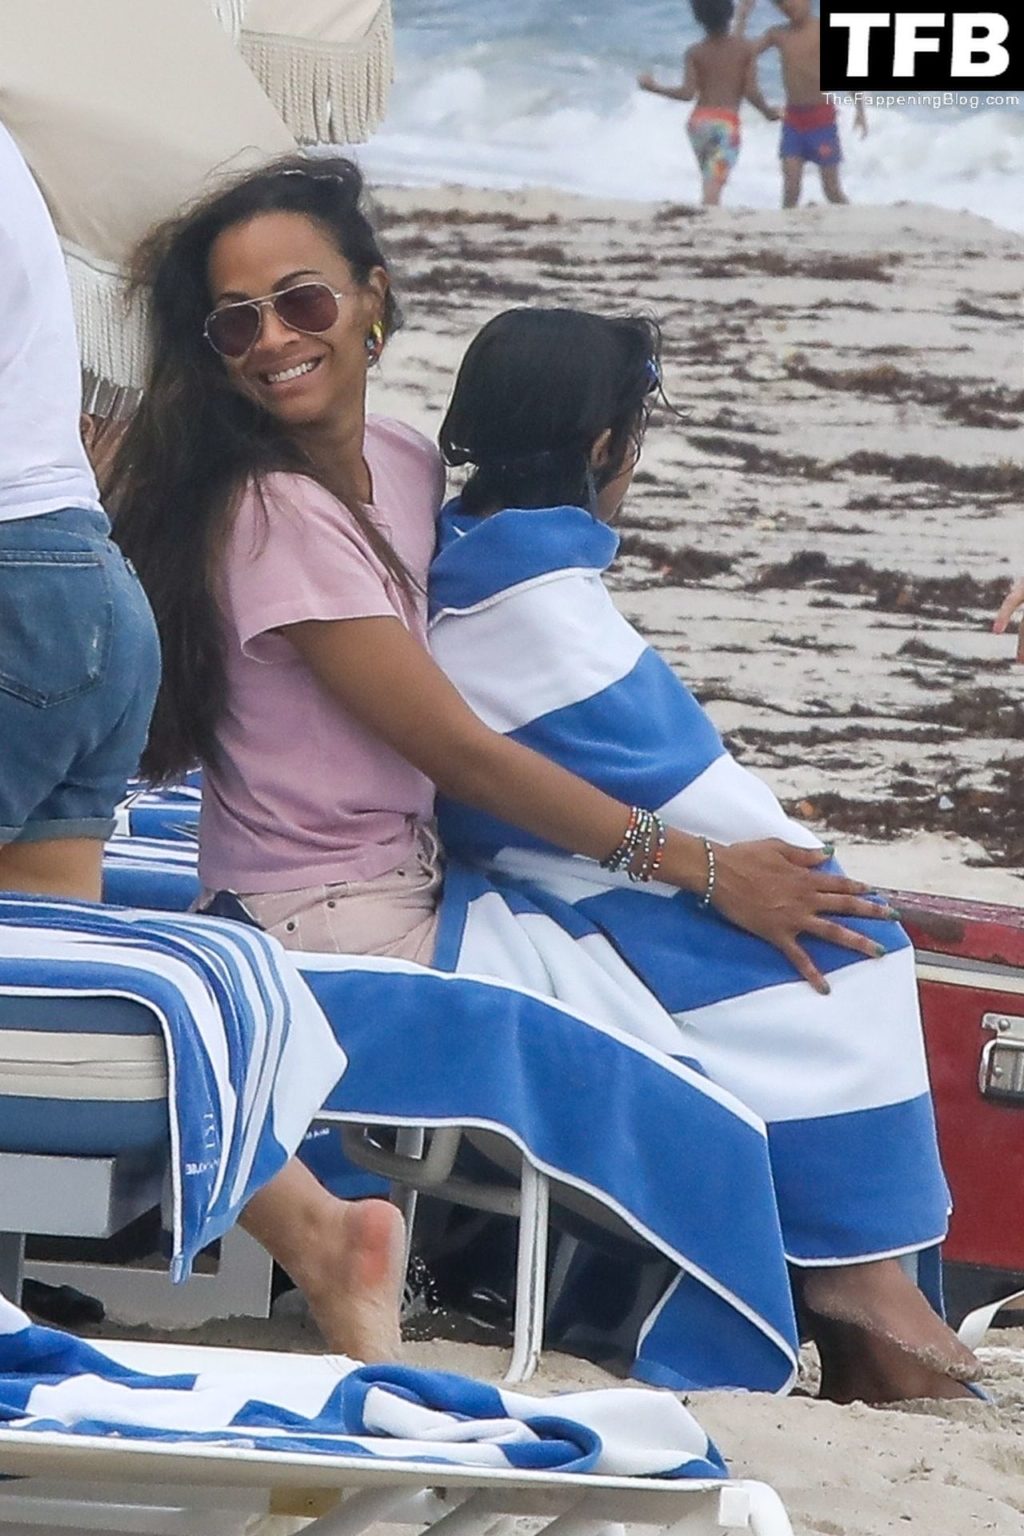 Zoe Saldana Enjoys a Day at the Beach With Her Family (79 Photos)